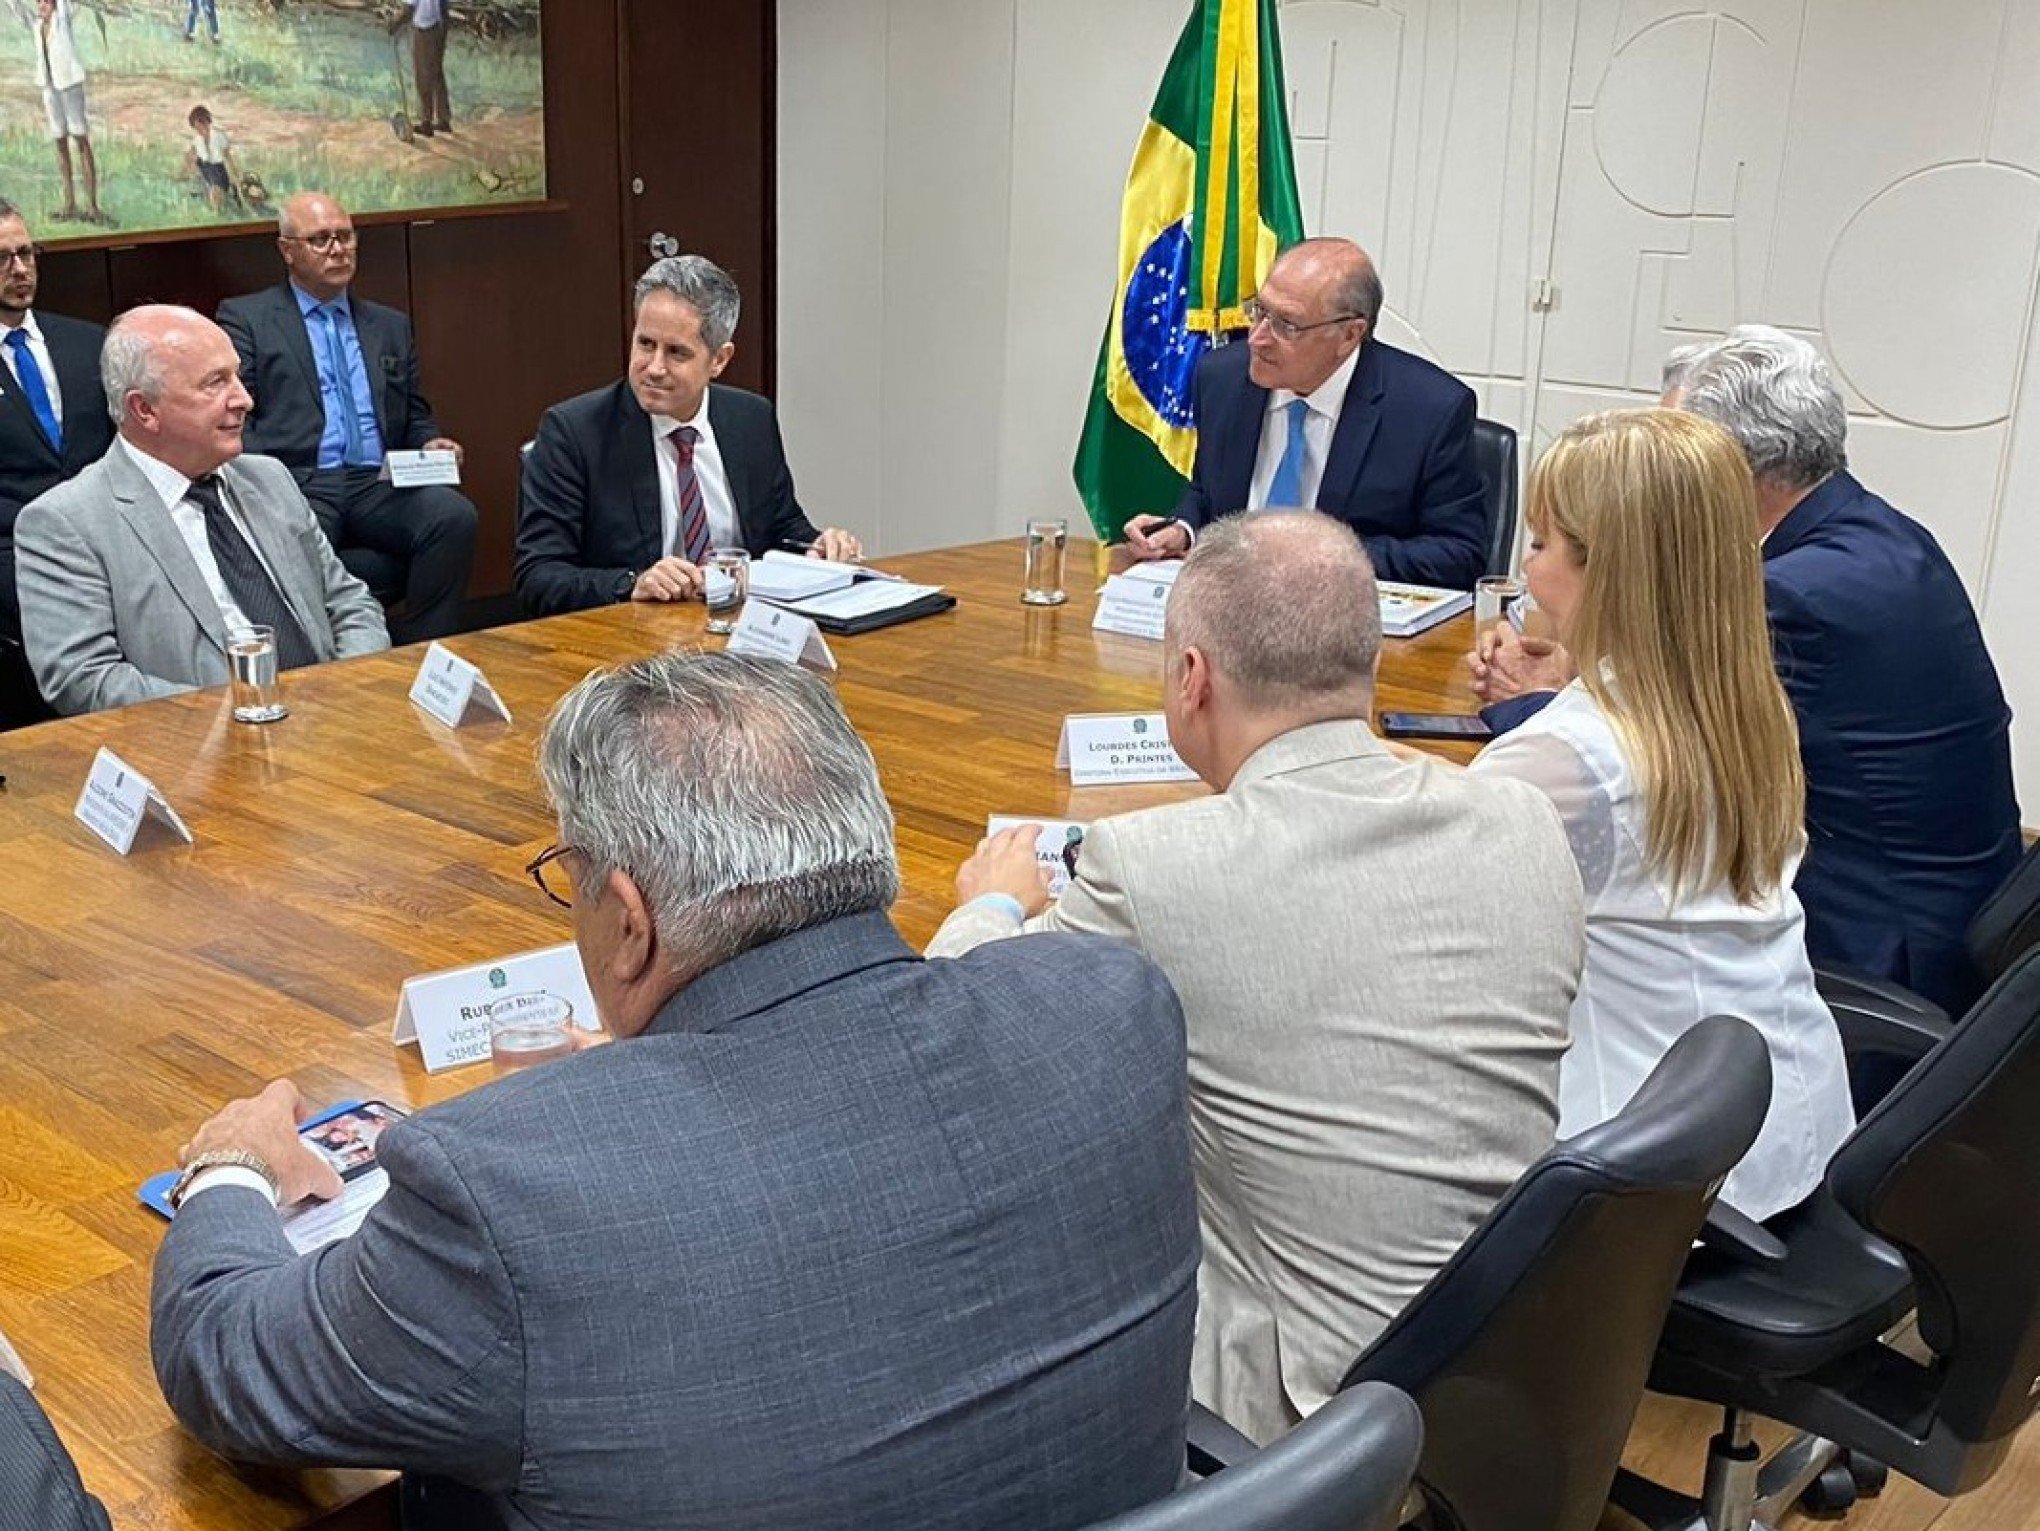 Vice-prefeito Luia Barbacovi e lideranças se reúnem com vice-presidente Geraldo Alckmin